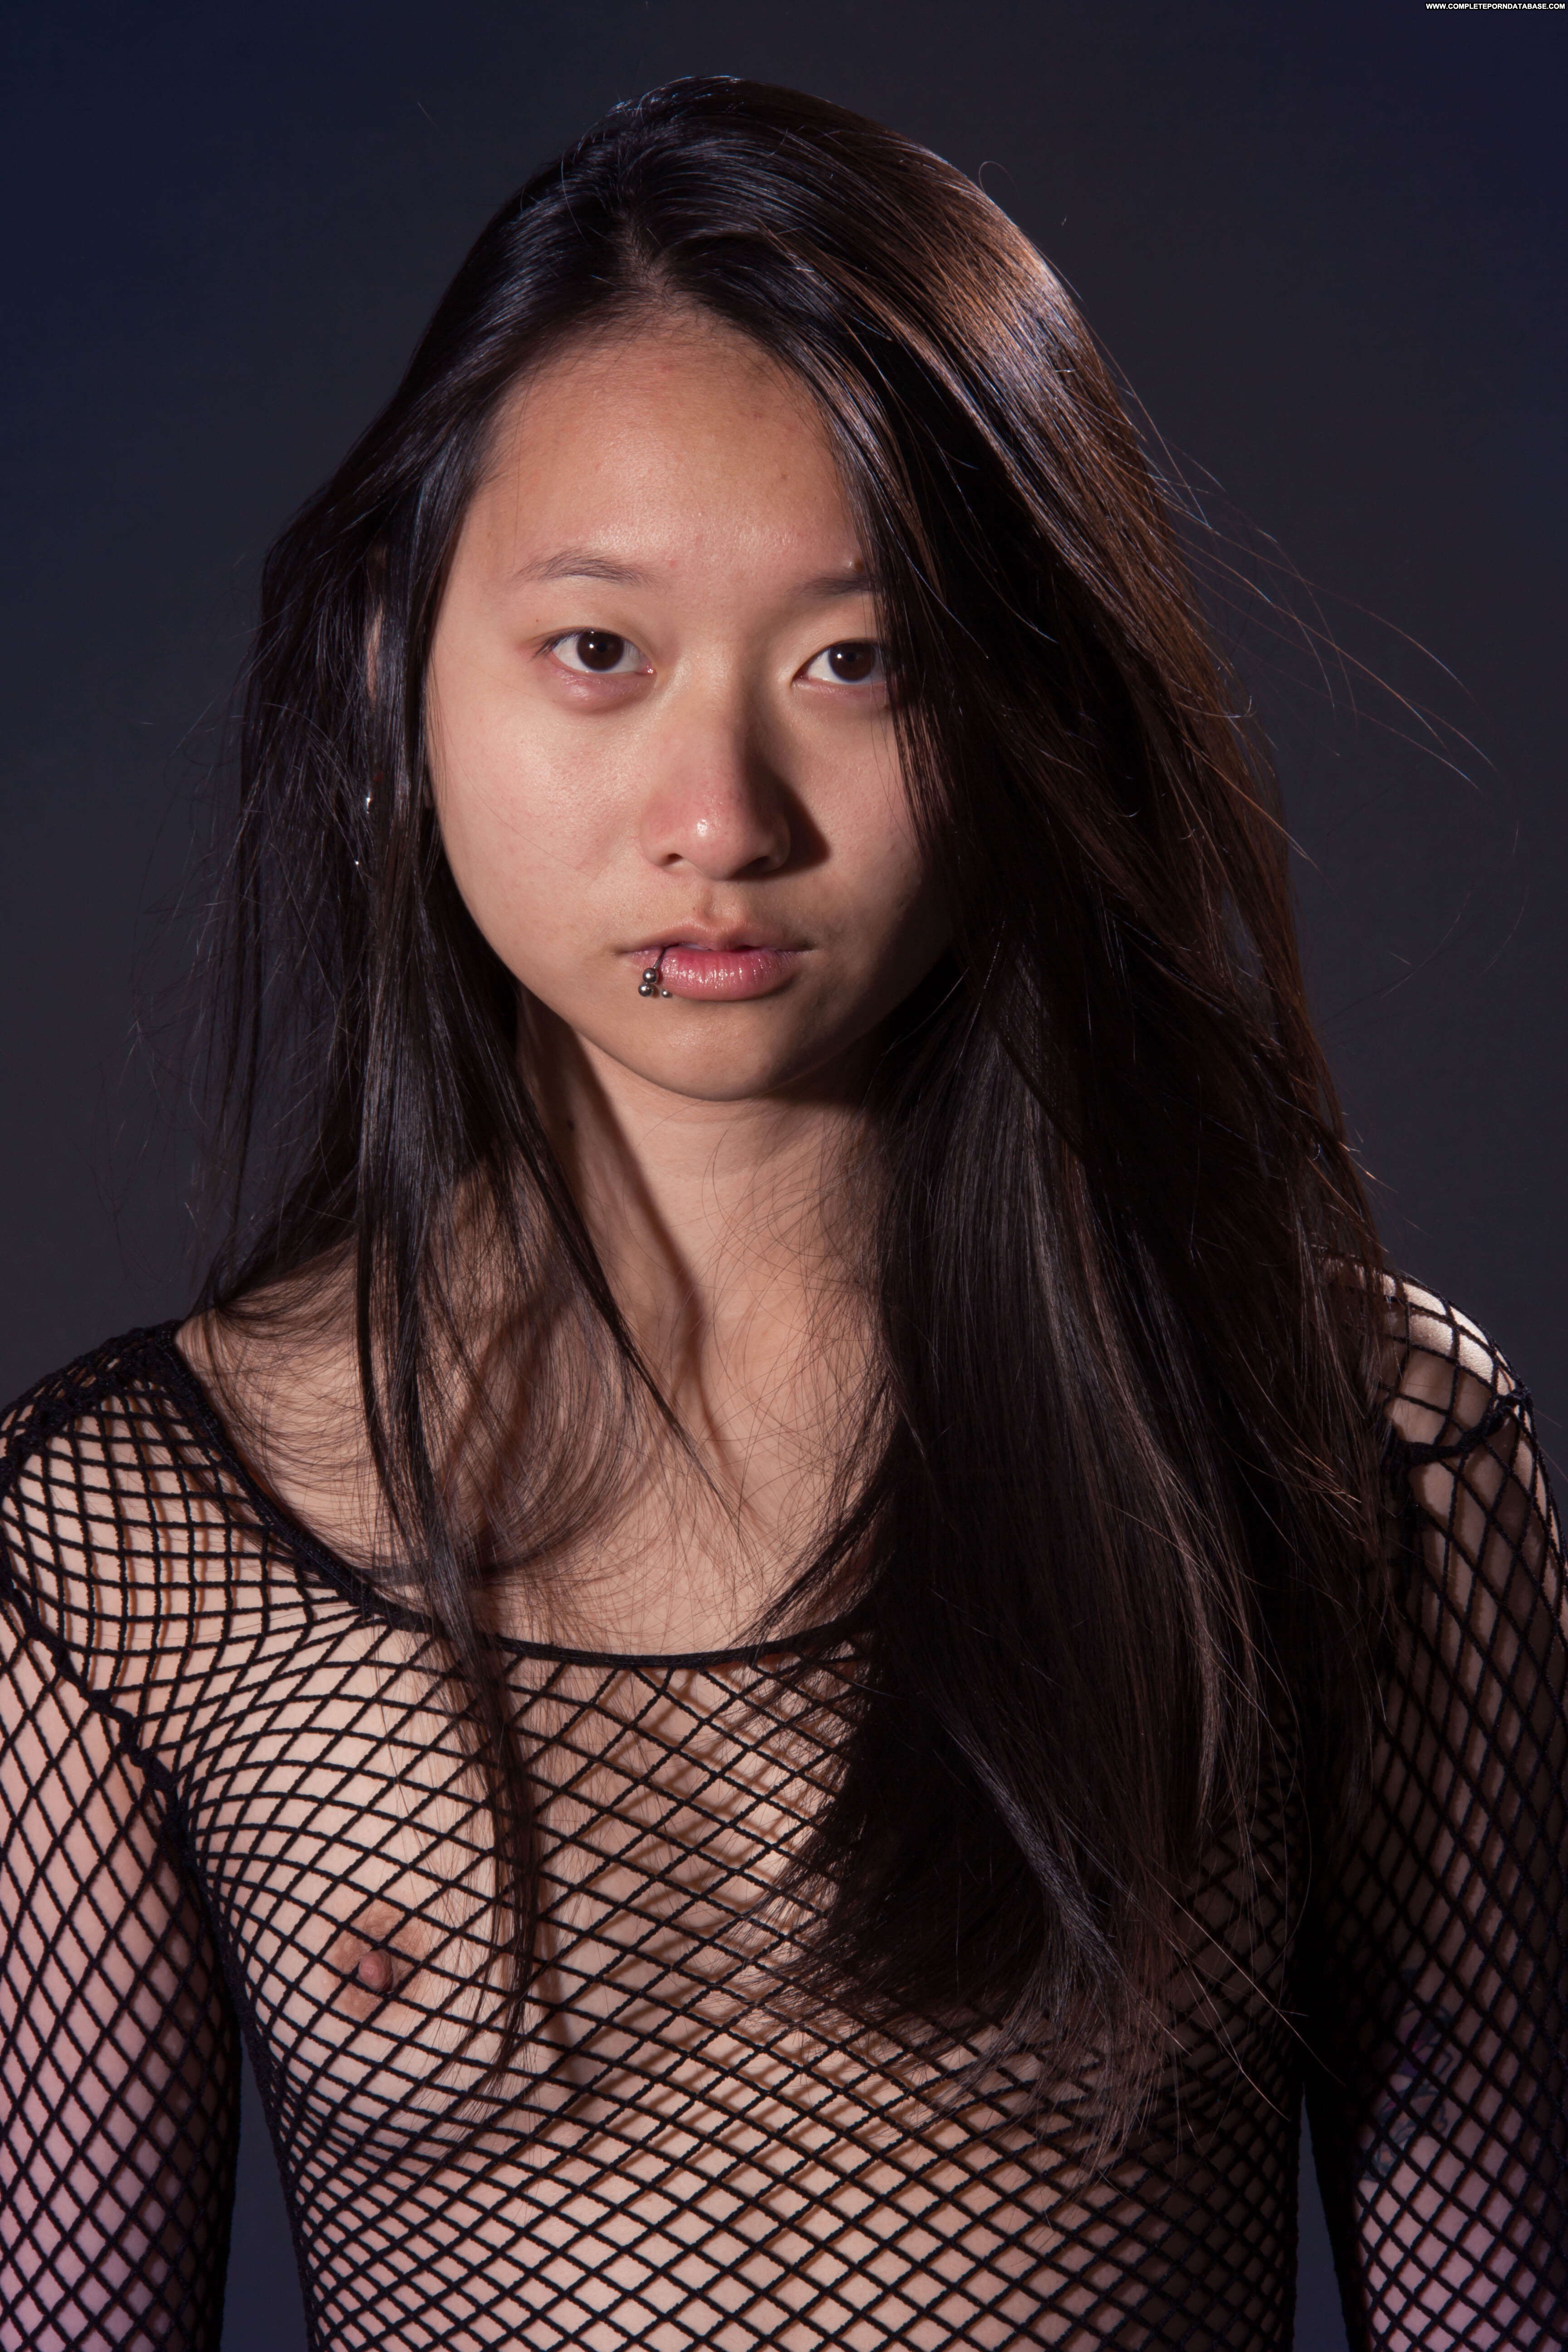 Catalina Straight Asian Amateur Amateur Asian Solo Modeling Amateur photo image